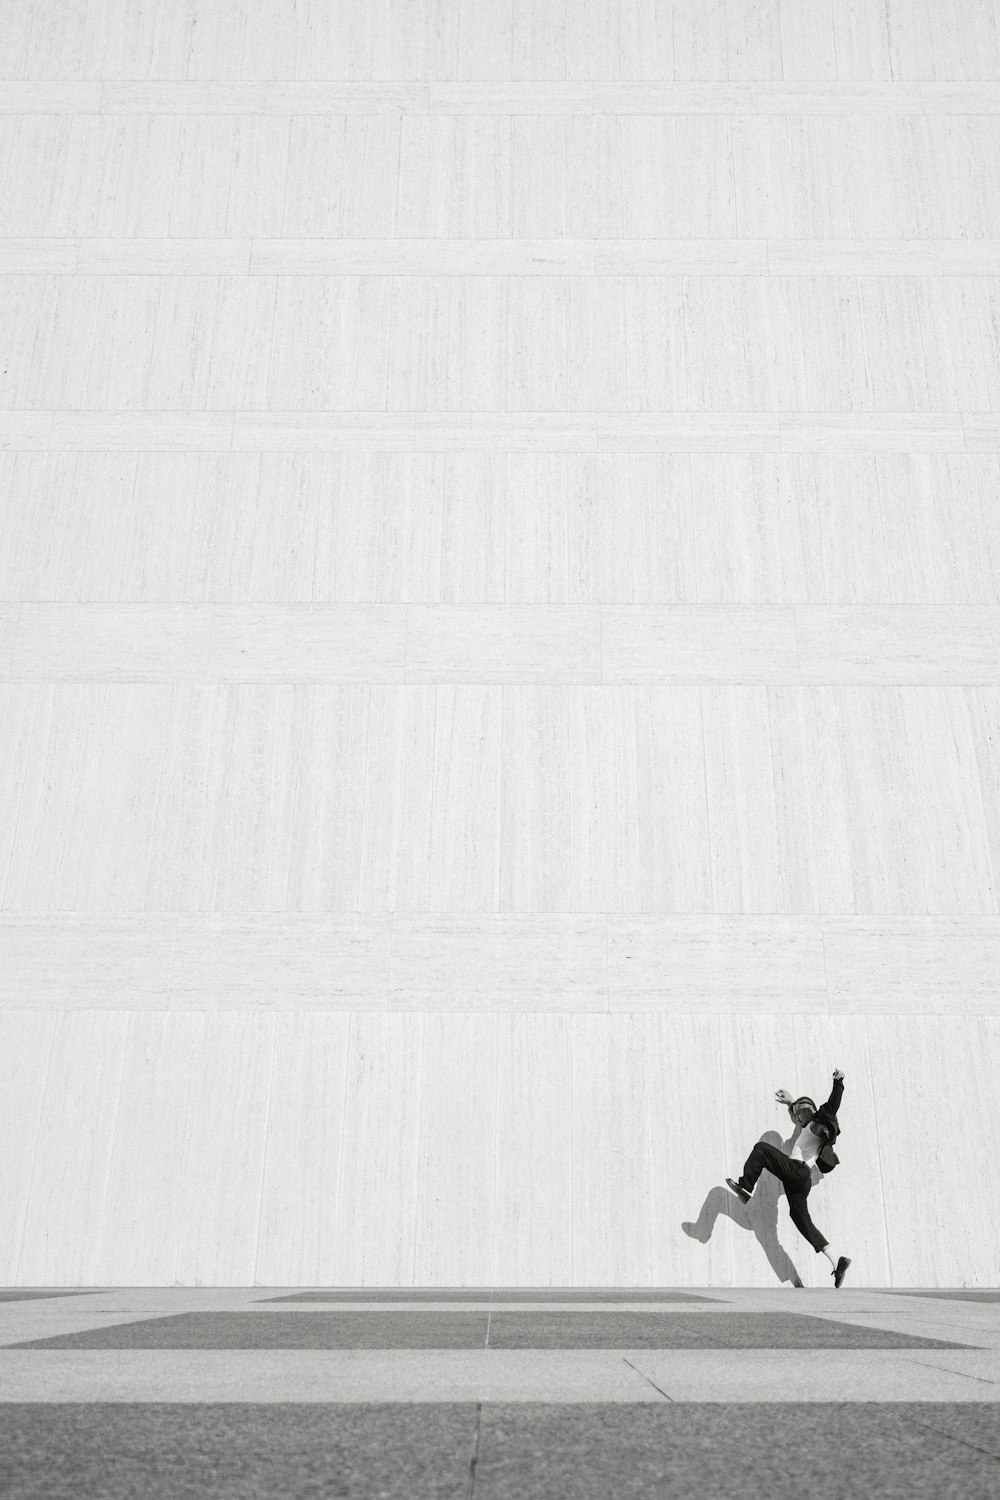 Una persona saltando en el aire en una patineta